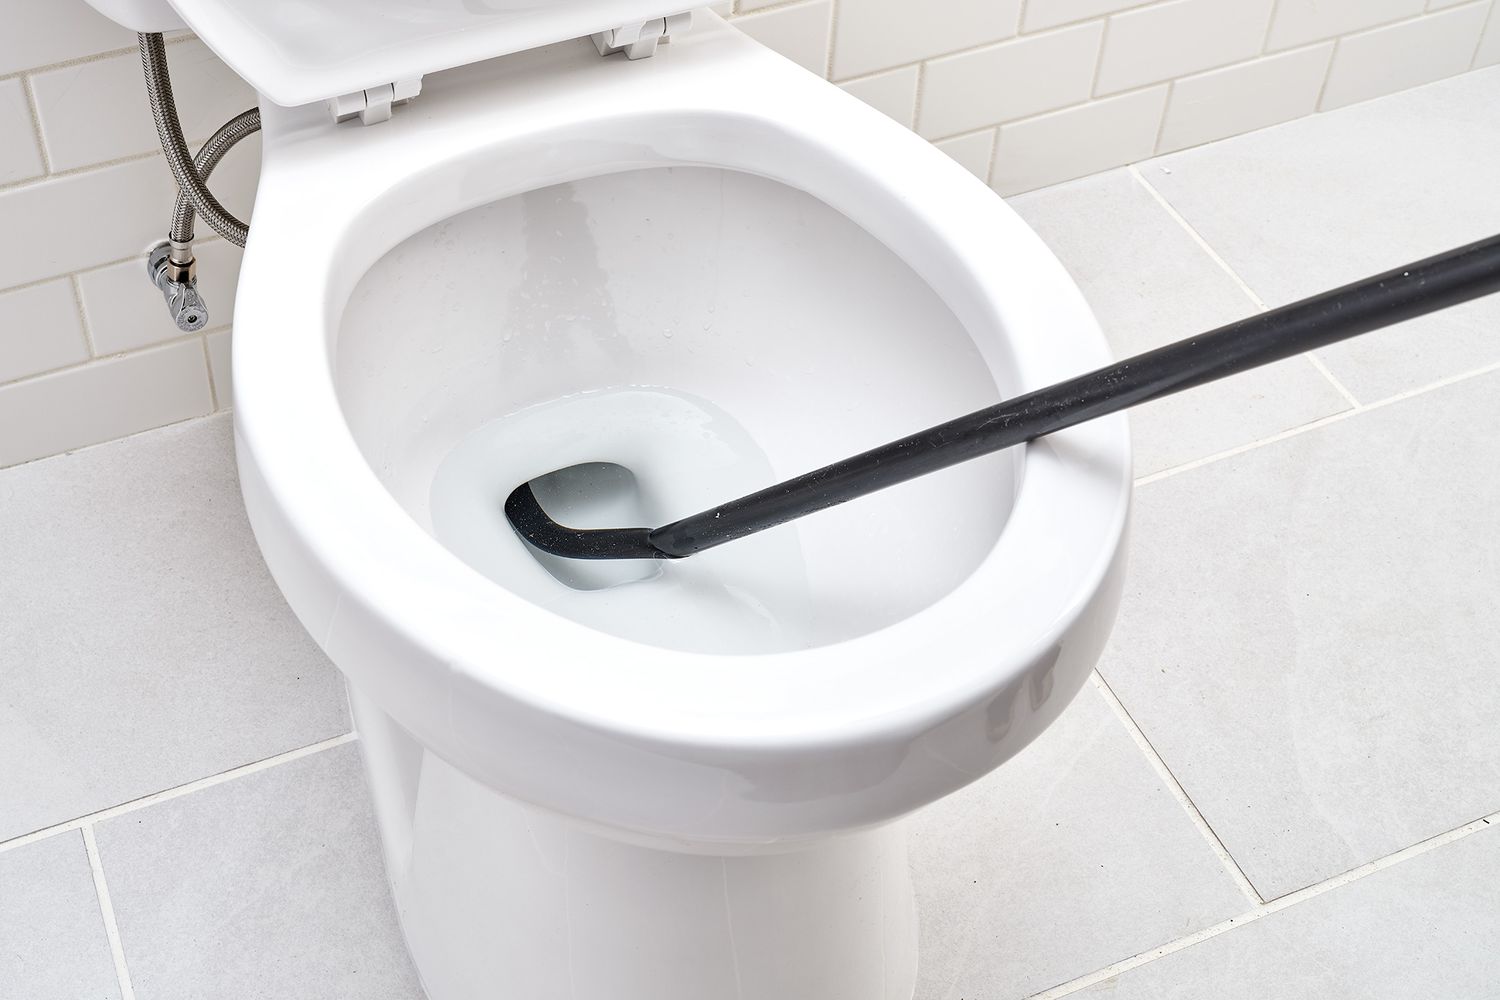 Schwarze Toilettenschnecke im Loch der Toilettenschüssel